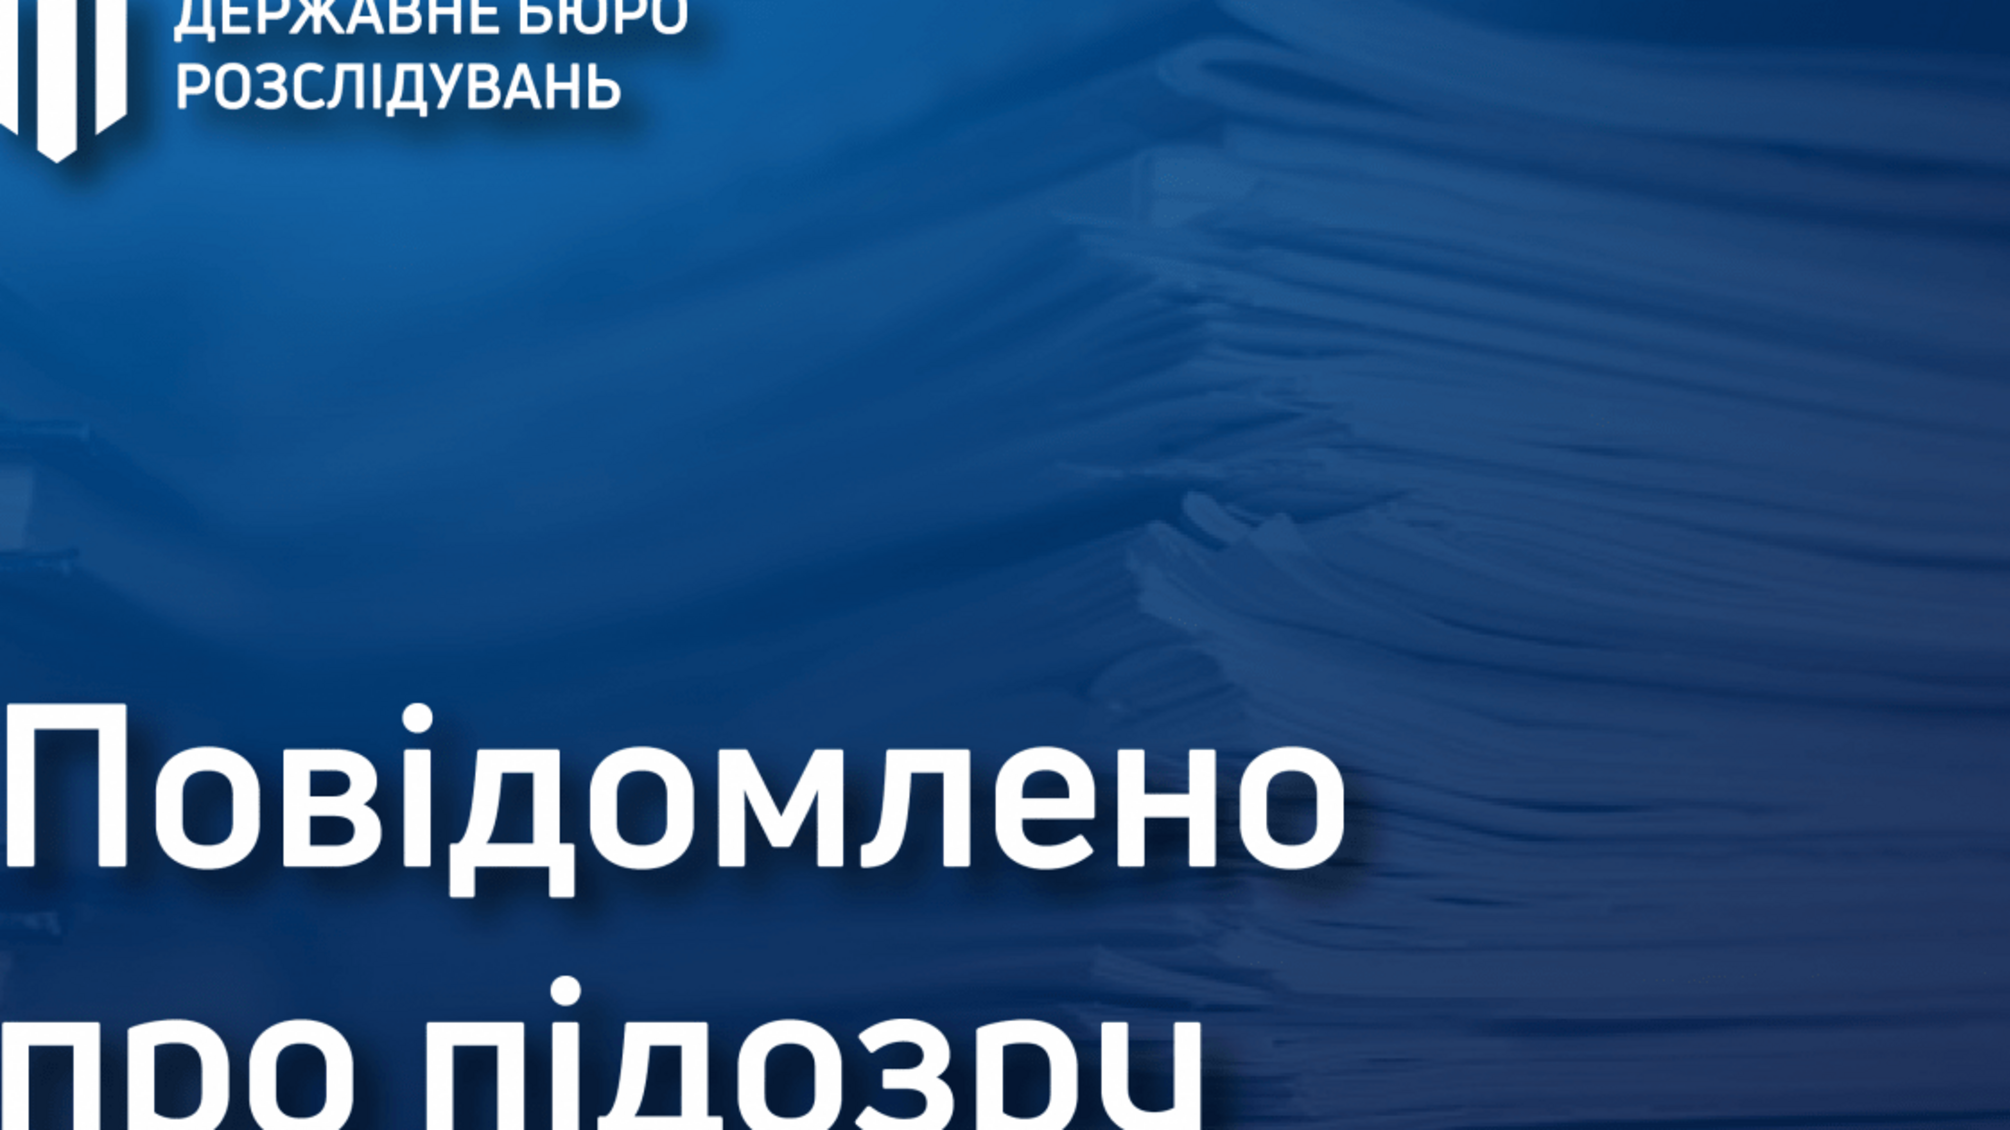 Службове підроблення та пошкодження офіційного документу – ДБР повідомило про підозру прокурору з Дніпропетровщини